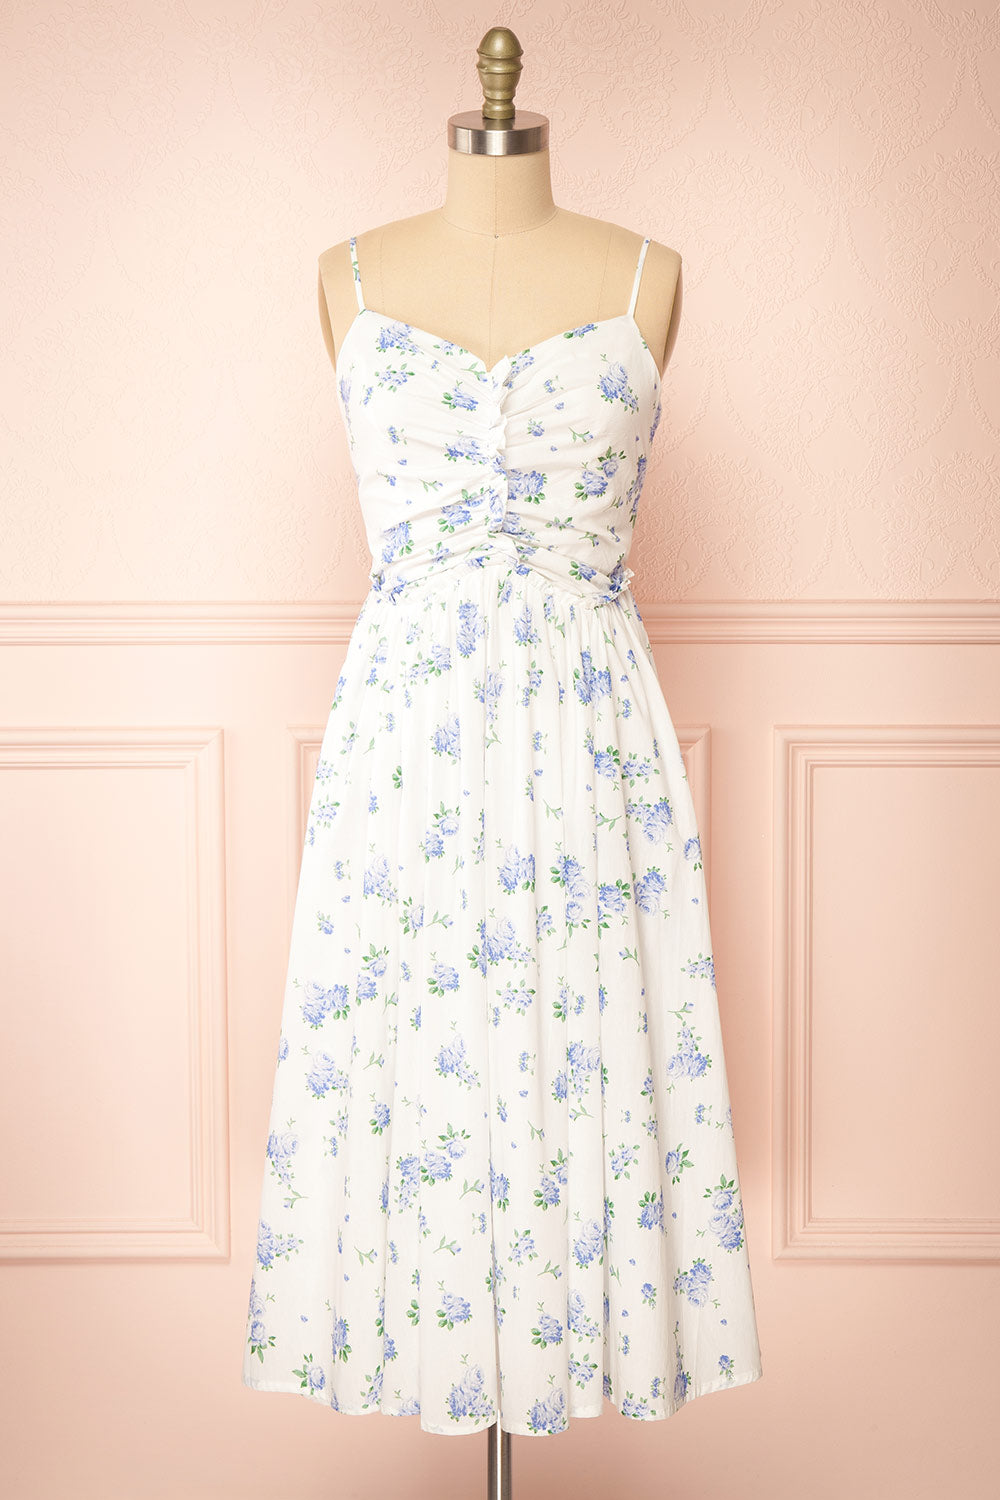 Sayonelle Short White A-line Dress w/ Blue Floral Motif | Boutique 1861 front view